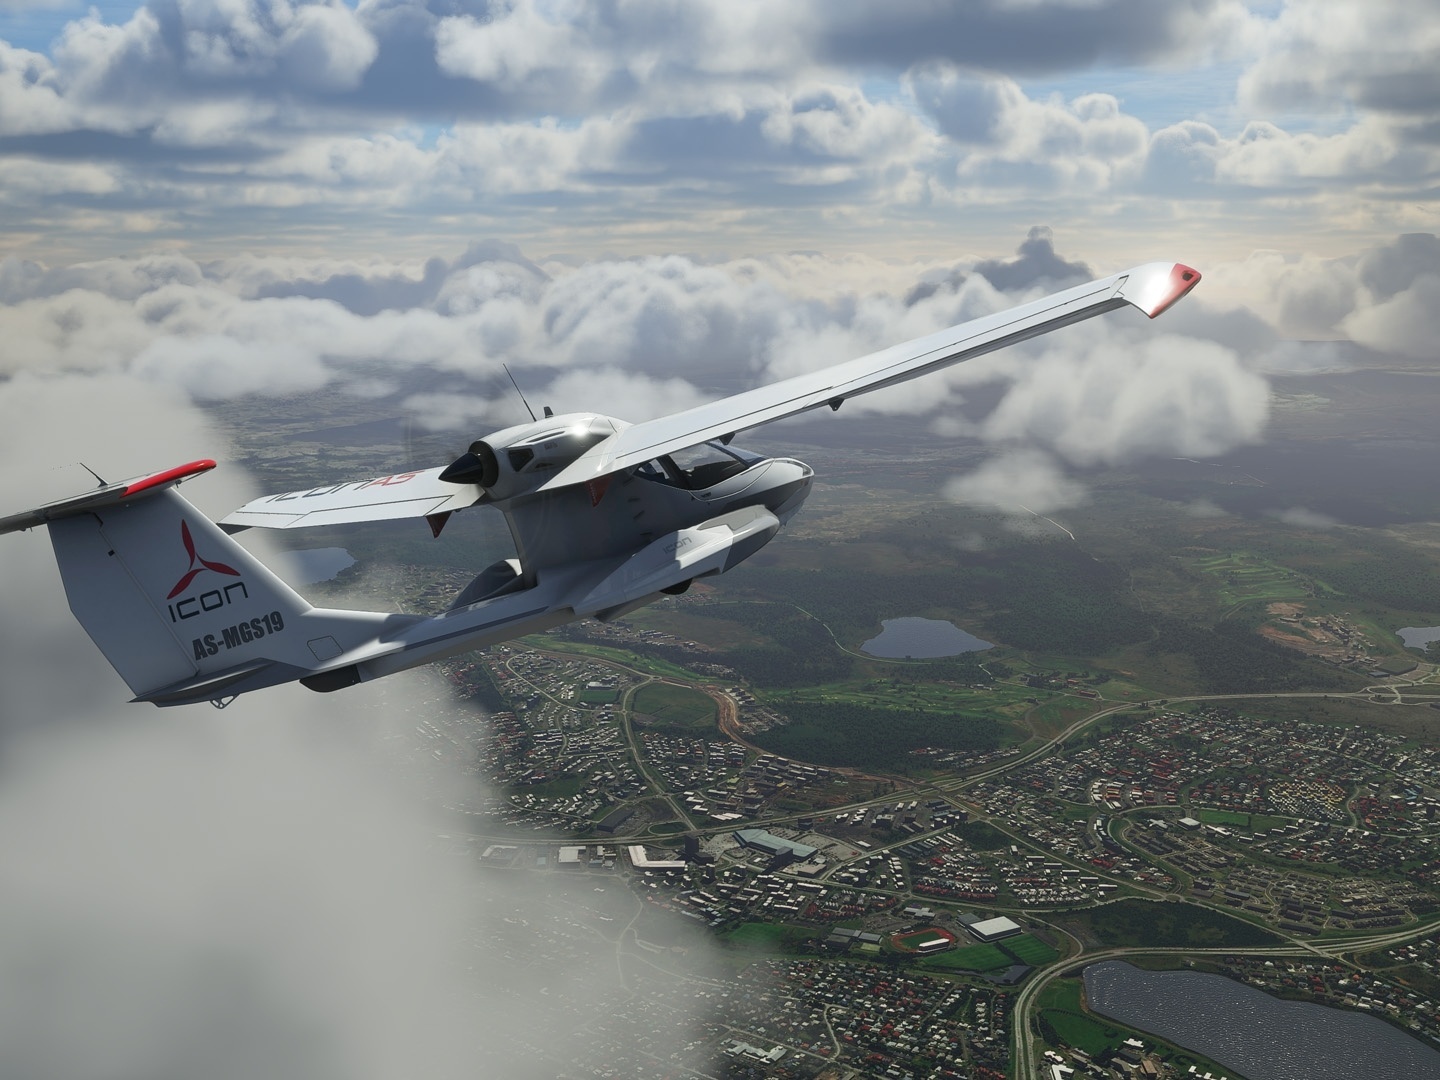 Microsoft Flight Simulator X será lançado na Steam em dezembro